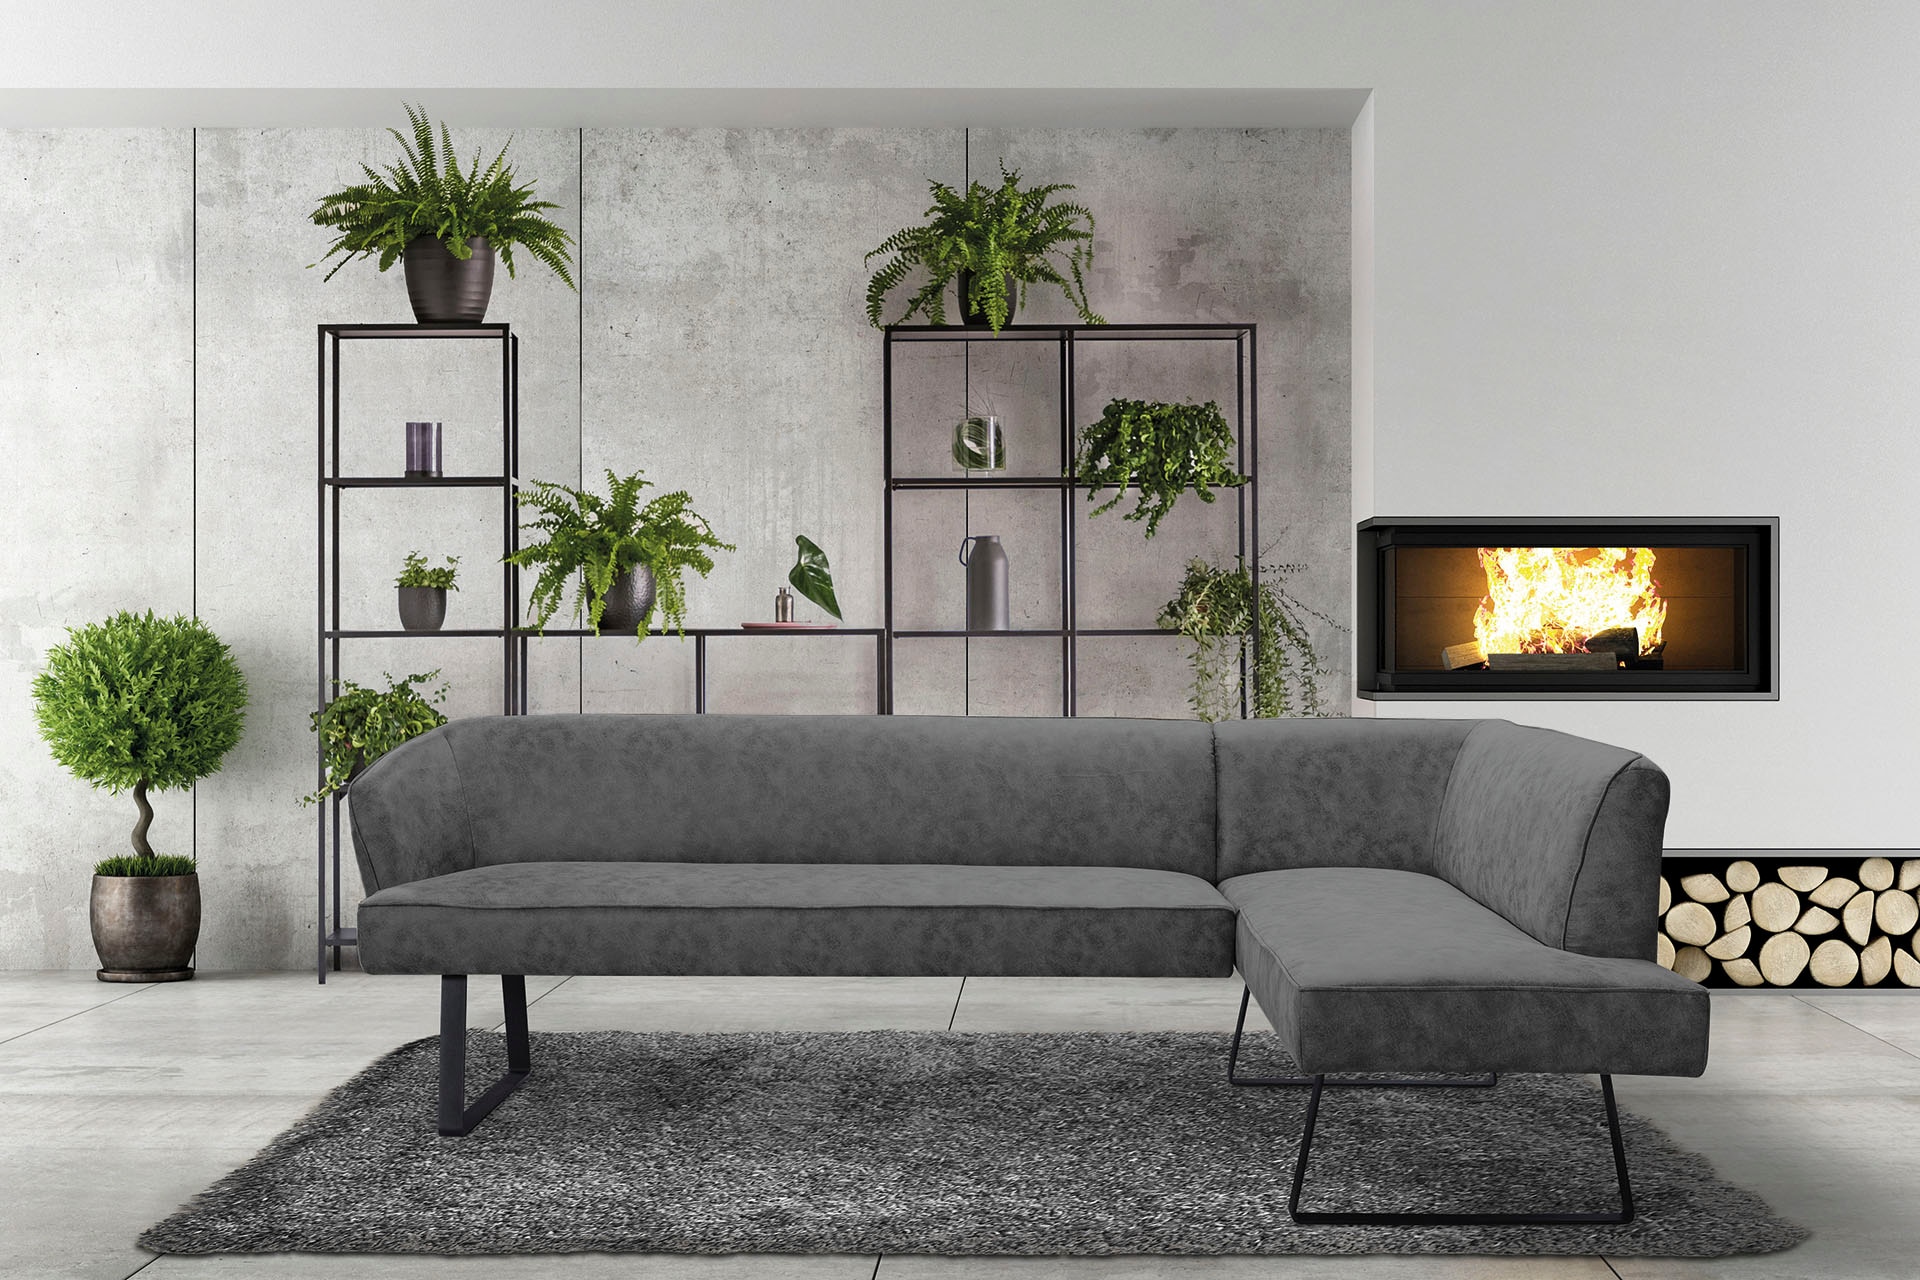 exxpo - sofa fashion Eckbank »Americano«, mit Keder und Metallfüssen, Bezug  in verschiedenen Qualitäten bequem kaufen